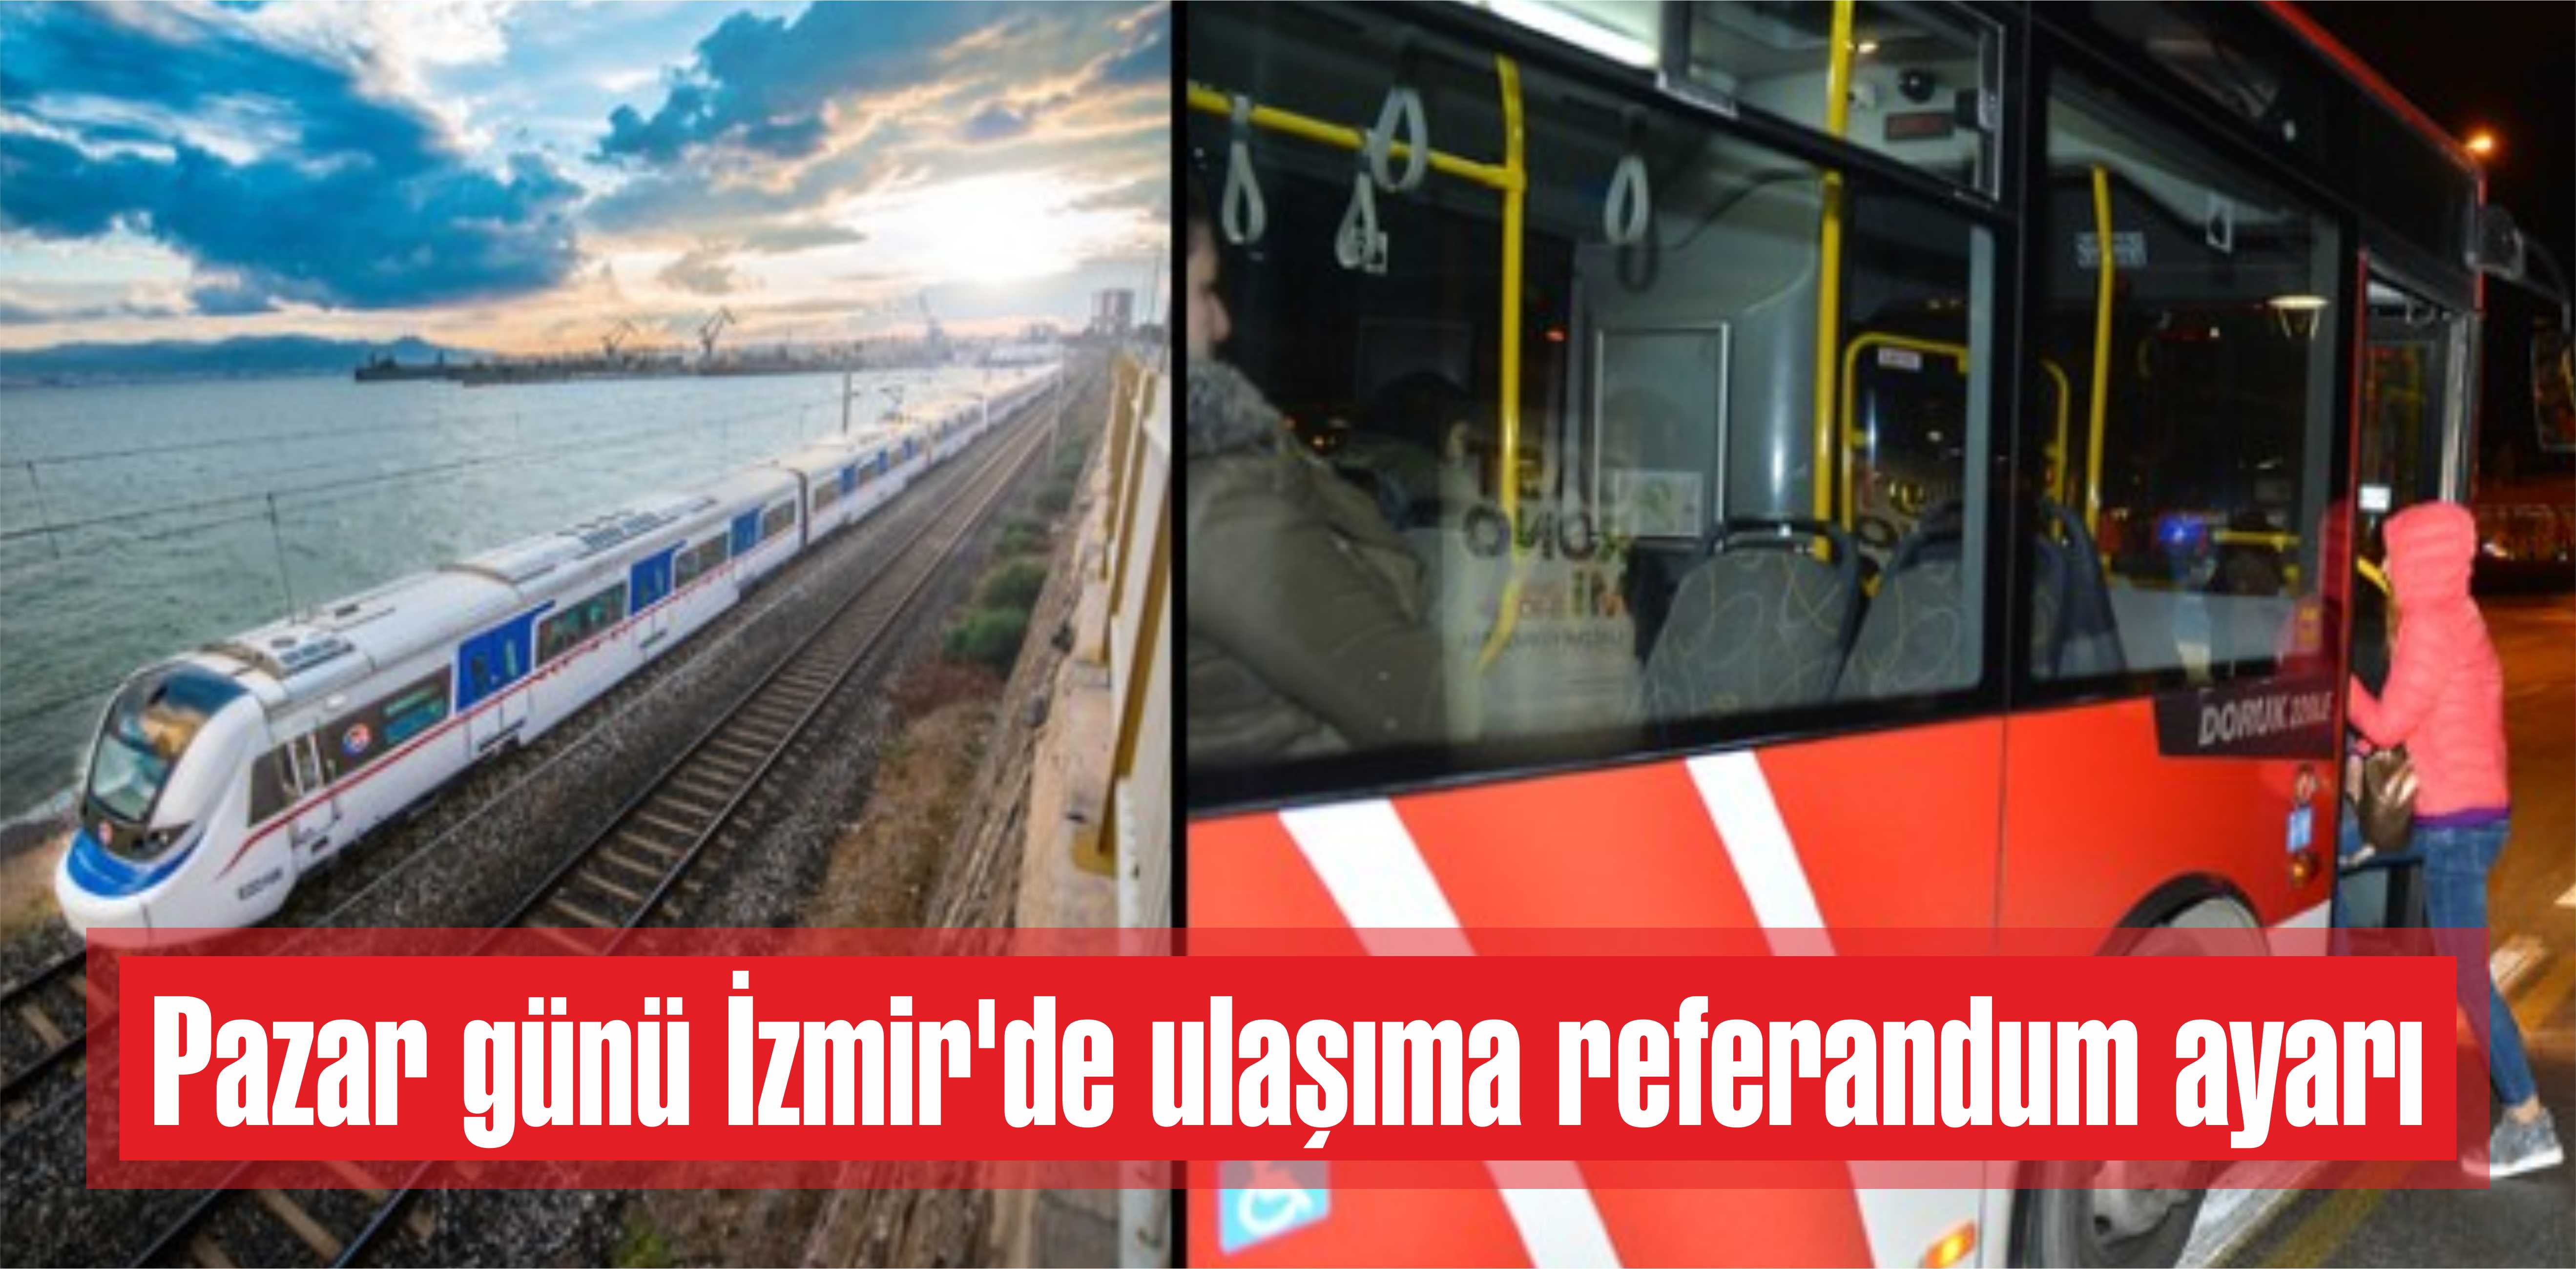 Pazar günü İzmir’de ulaşıma referandum ayarı